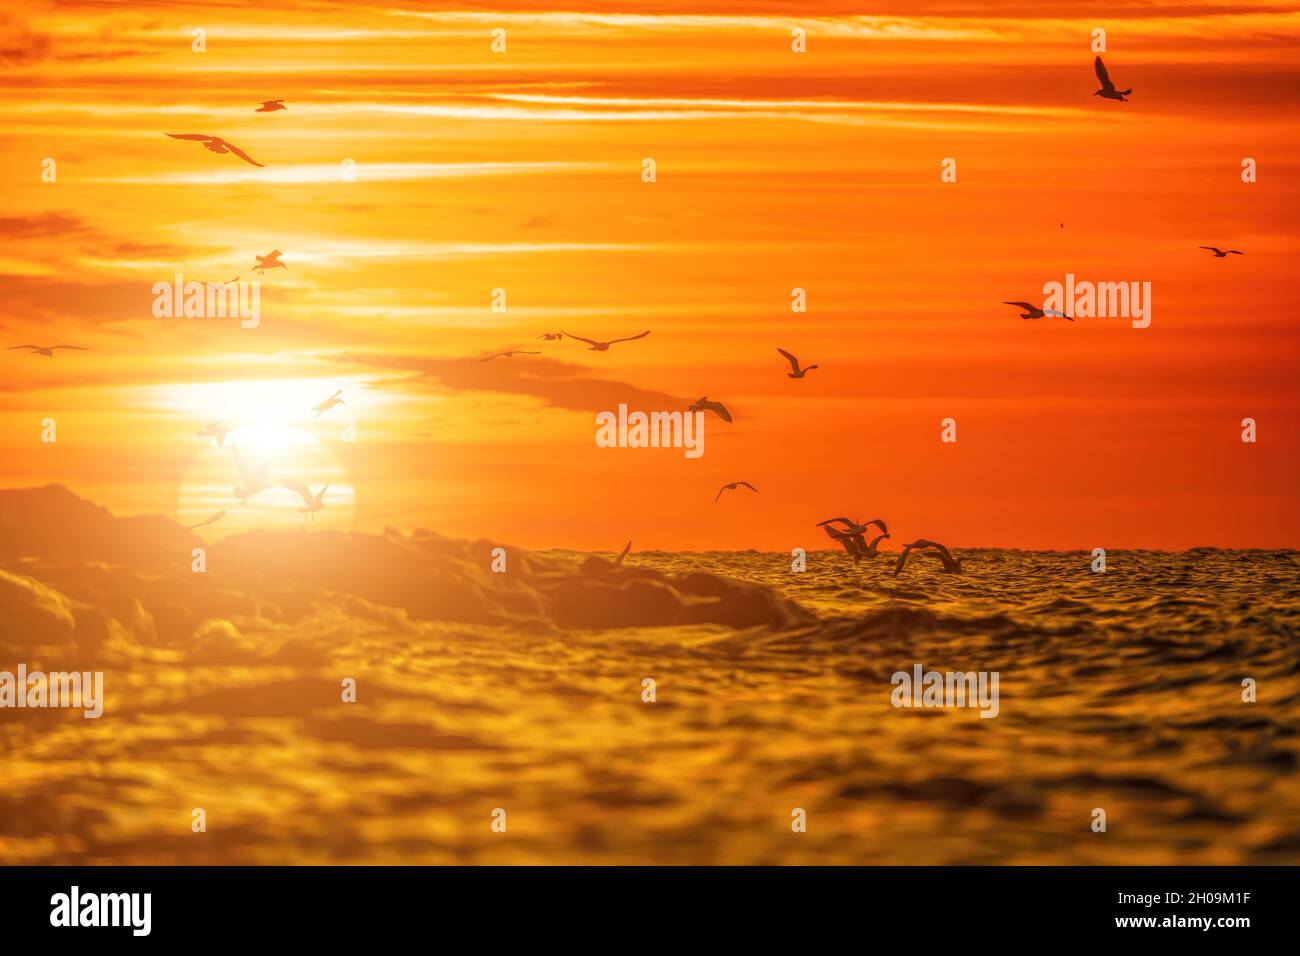 Un troupeau de mouettes volent et pêchent dans la mer.Coucher de soleil au-dessus de l'océan, soleil éblouissant.Silhouettes de mouettes volantes au ralenti loin du Banque D'Images